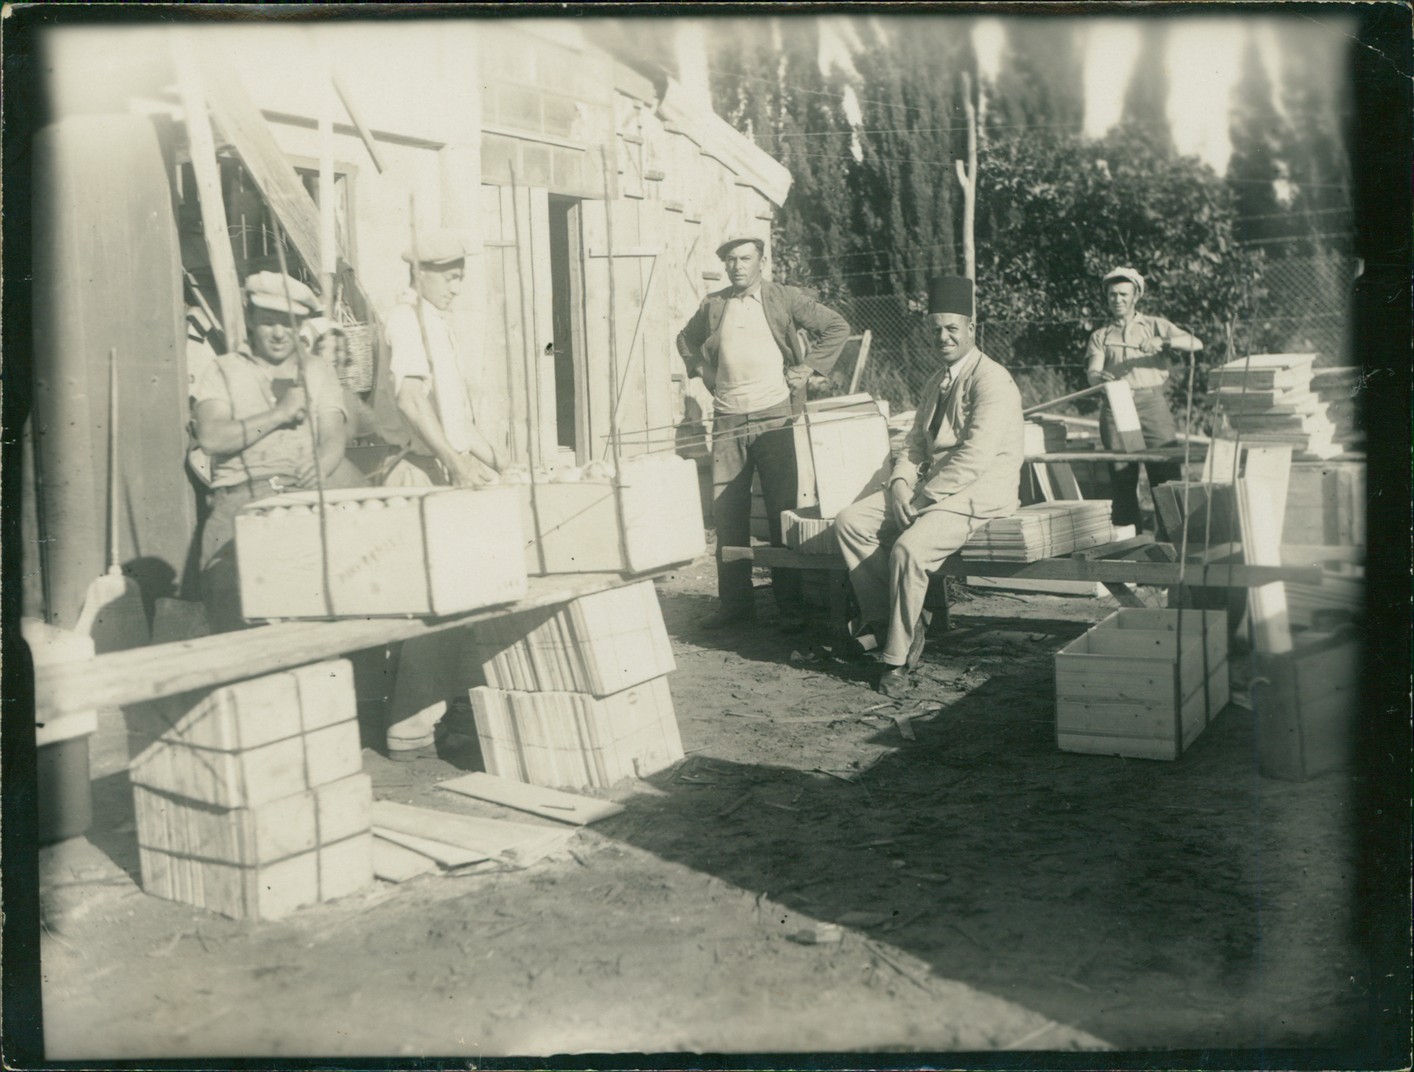 דוד הירשהורן (במרכז) בבית האריזה לתפוזים, שנות ה-40